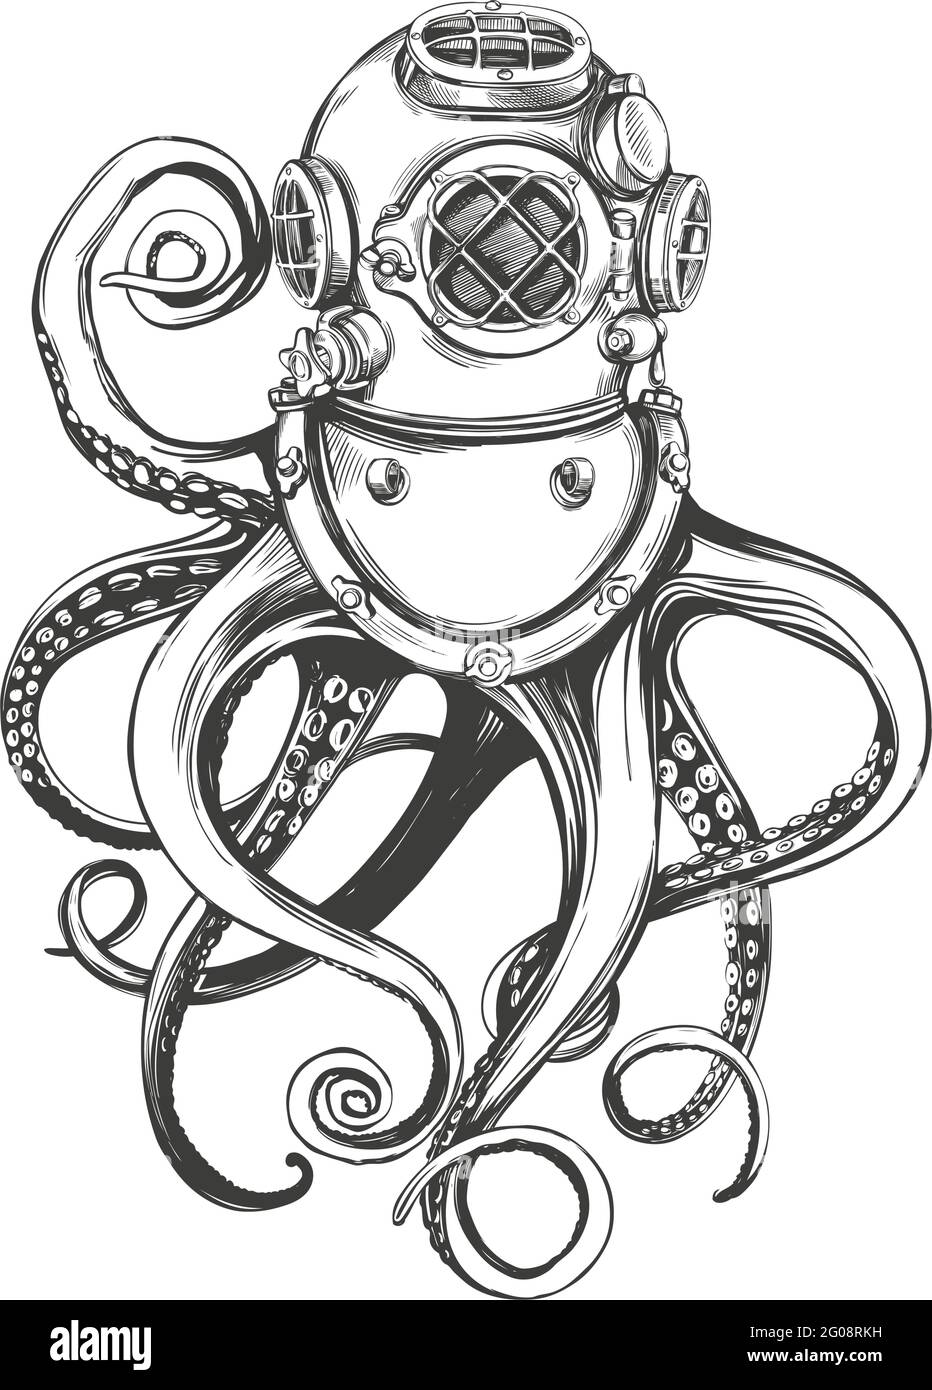 polpo in un casco subacqueo, vecchio casco subacqueo disegnato a mano disegno vettoriale illustrazione Illustrazione Vettoriale